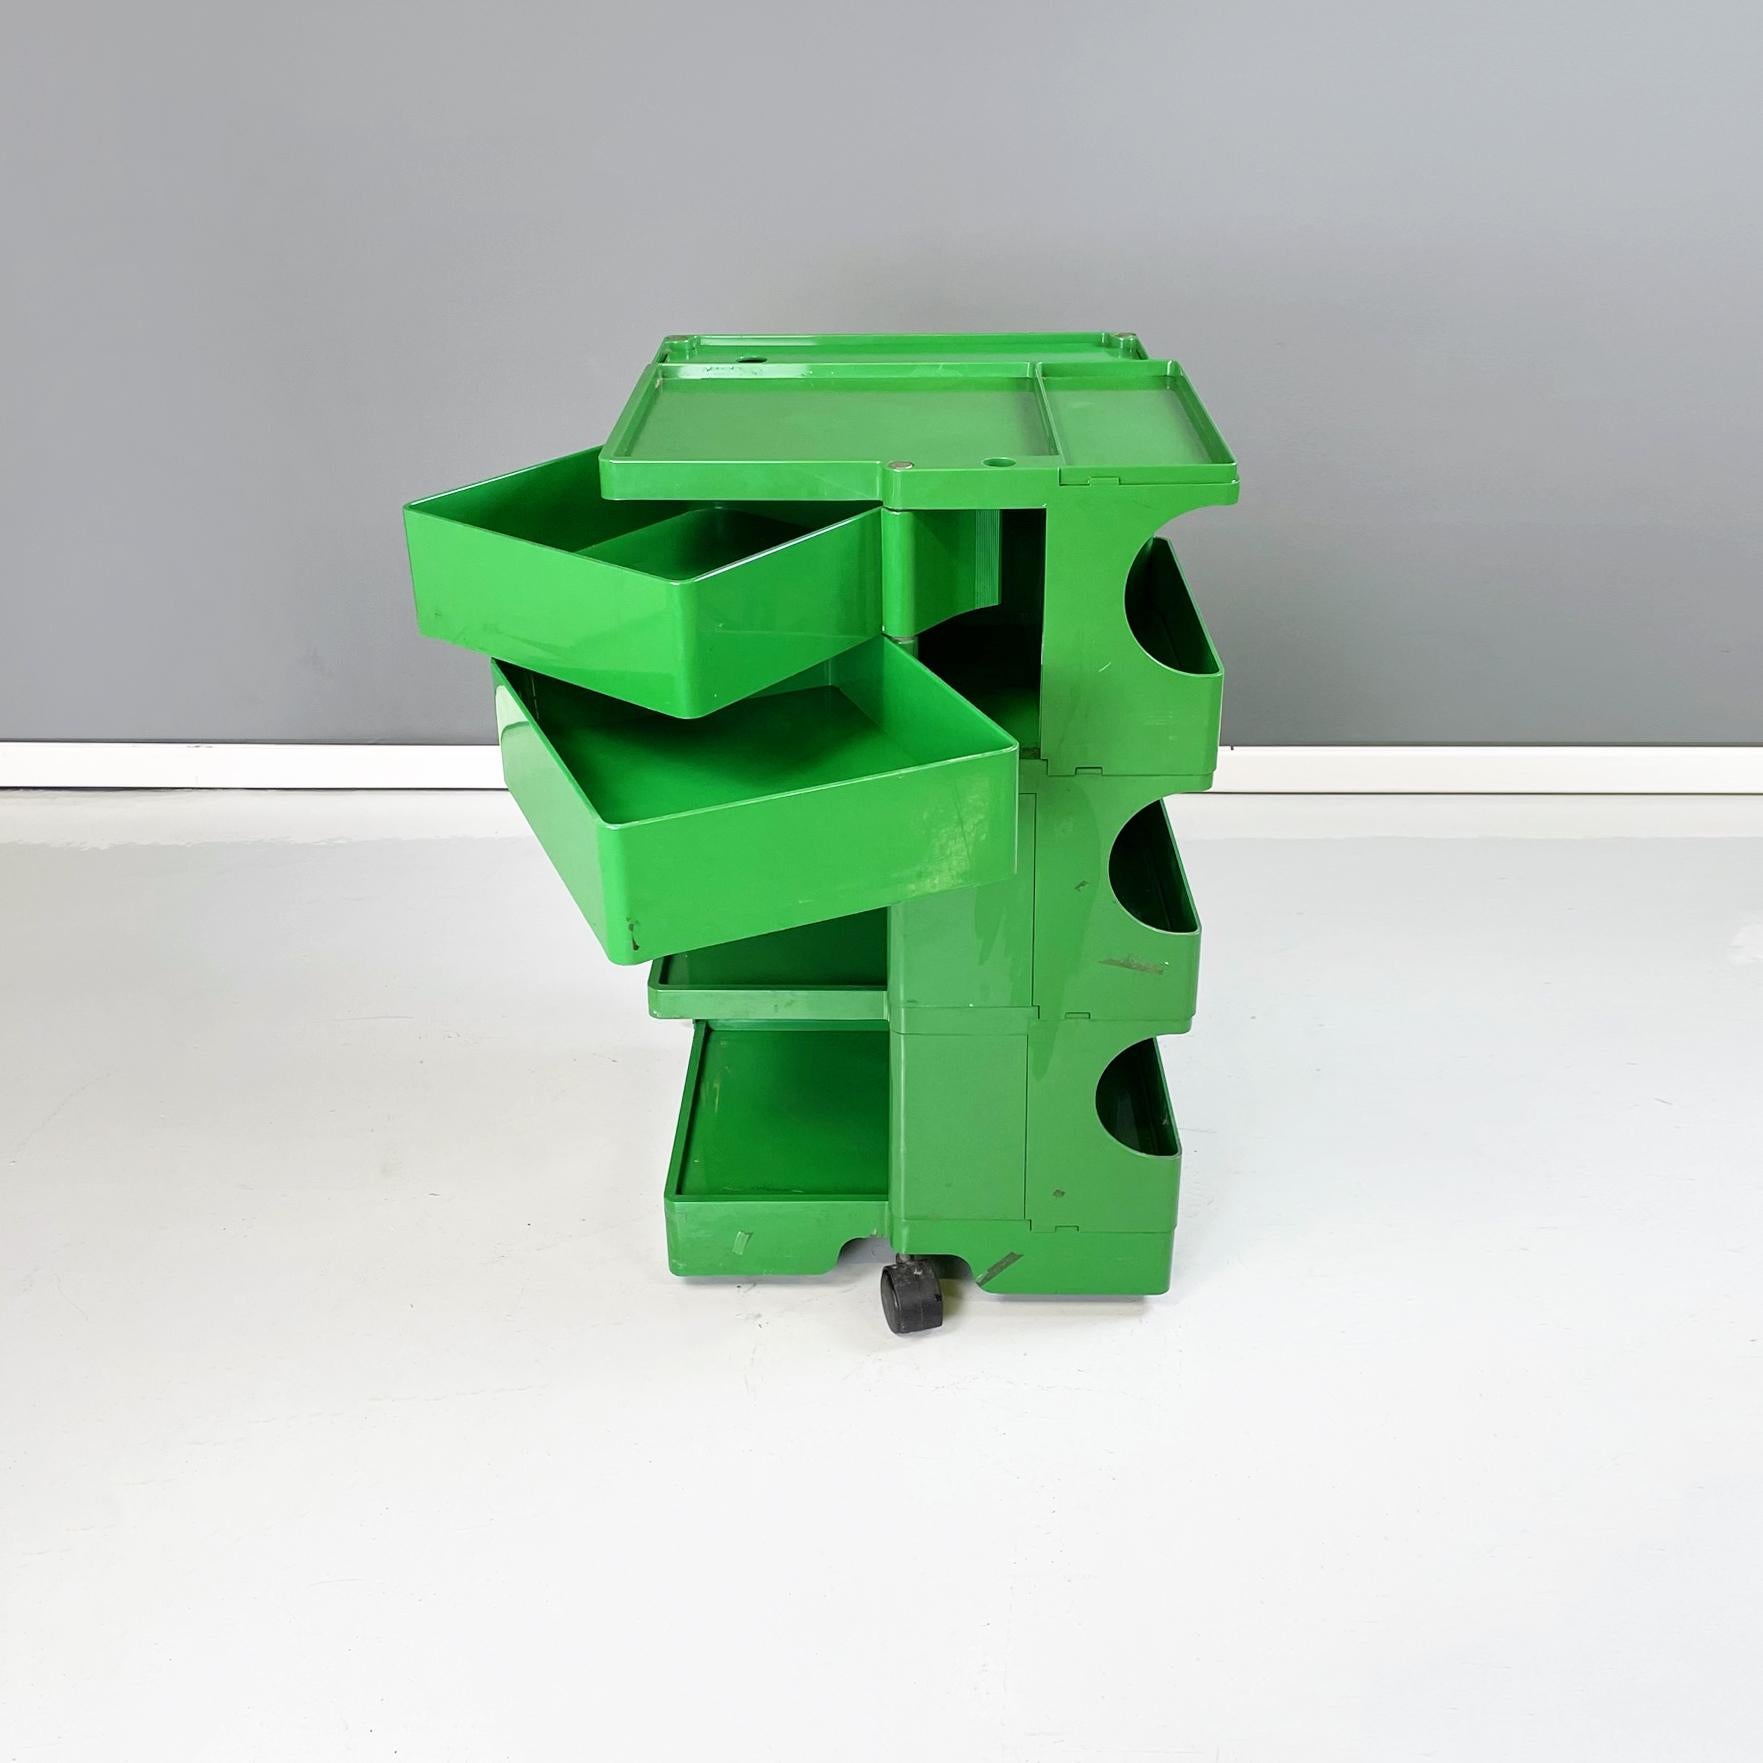 Late 20th Century Italian Modern Green Plastic Cart Boby by Joe Colombo for Bieffeplast, 1968